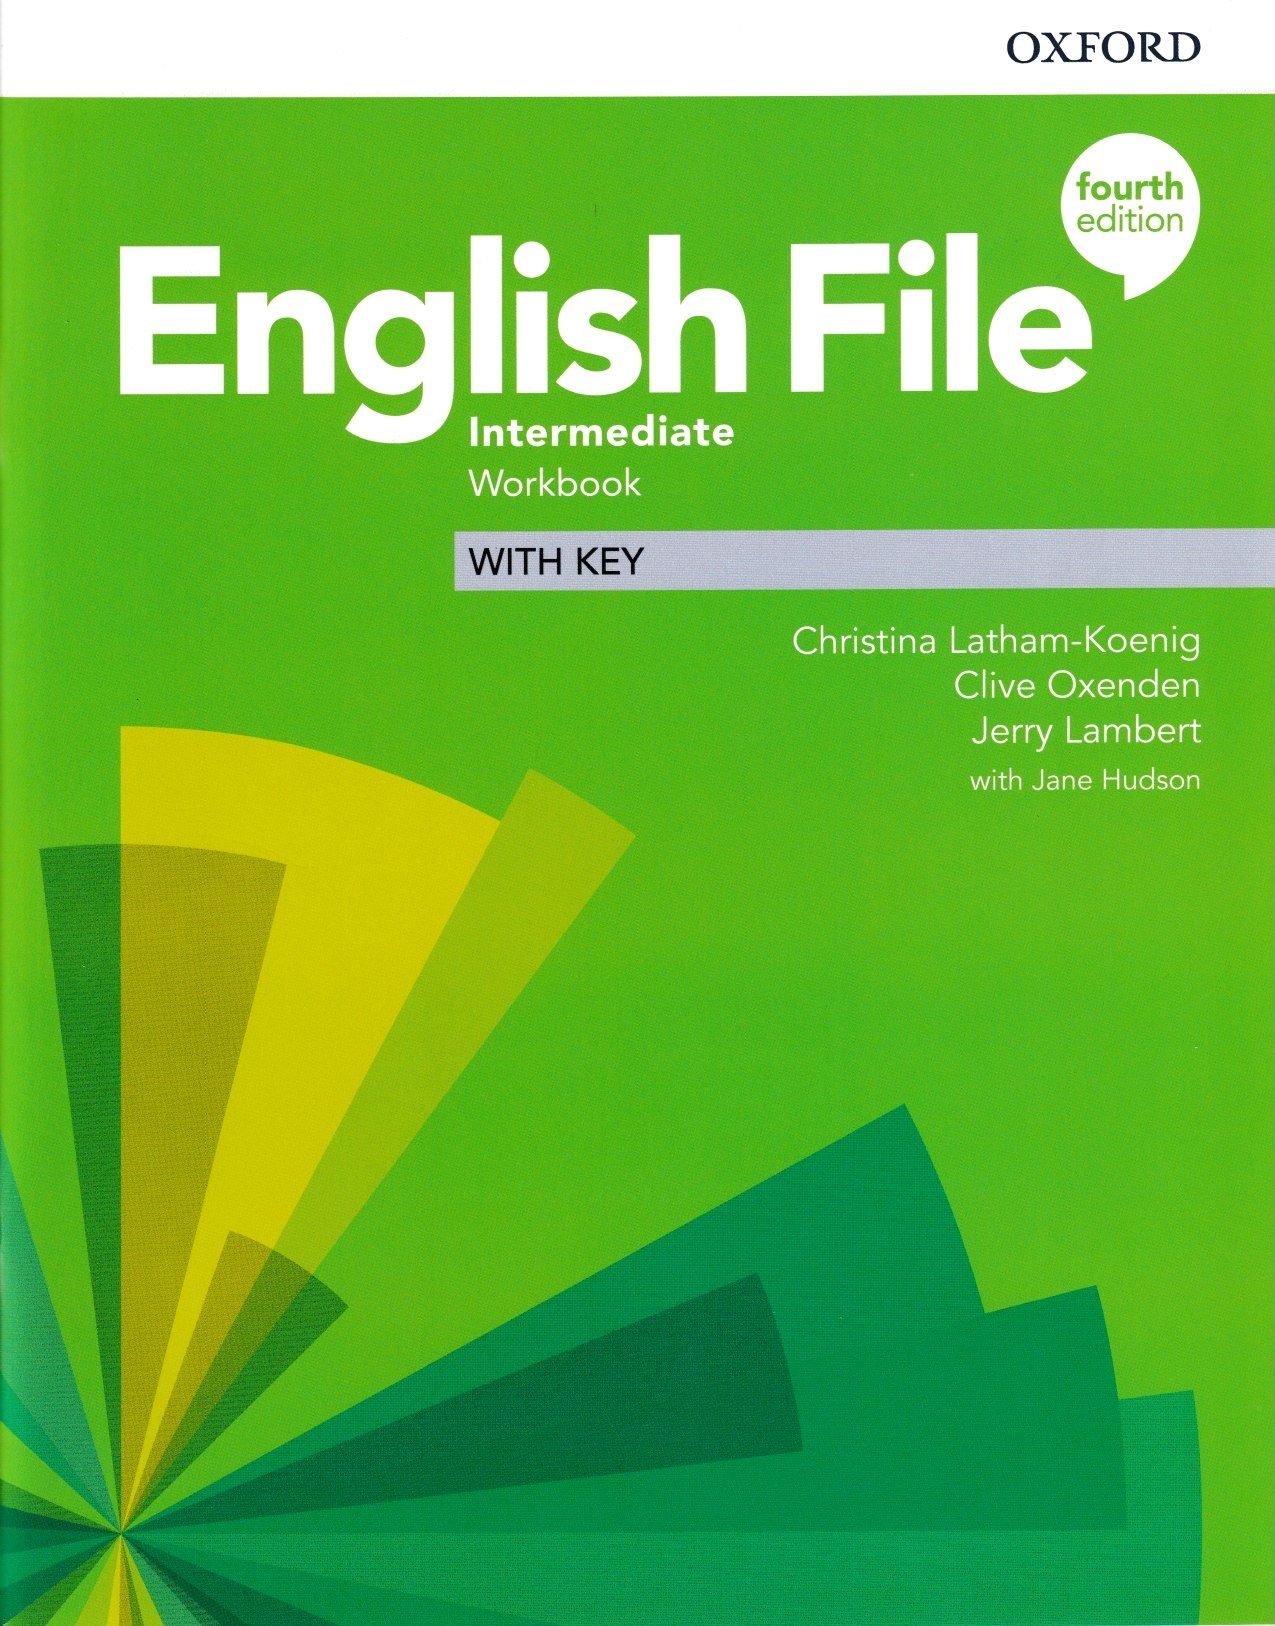 Инглиш файл интермедиат. New English file Upper Intermediate fourth Edition. New English file Intermediate 4th Edition. Инглиш файл Аппер интермедит ворк бук. Воркбук интермедиат английский.